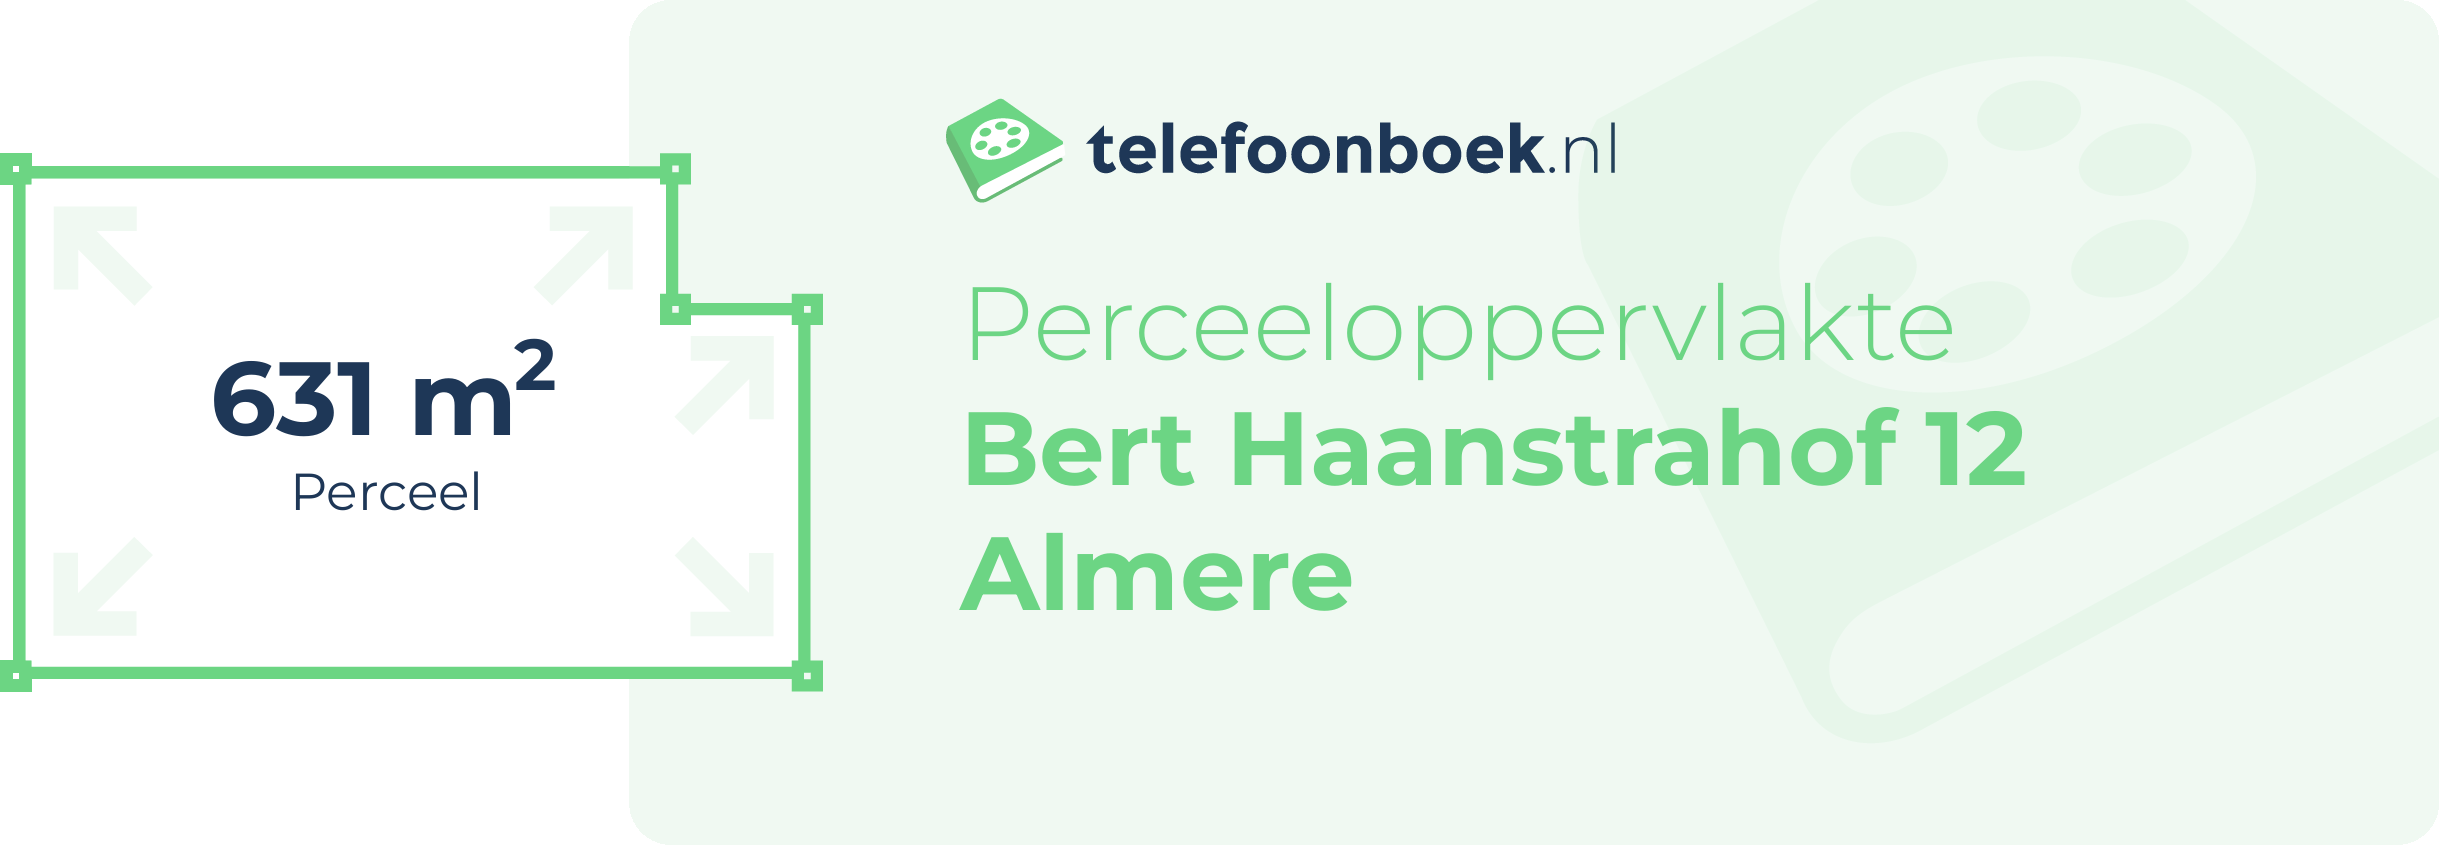 Perceeloppervlakte Bert Haanstrahof 12 Almere